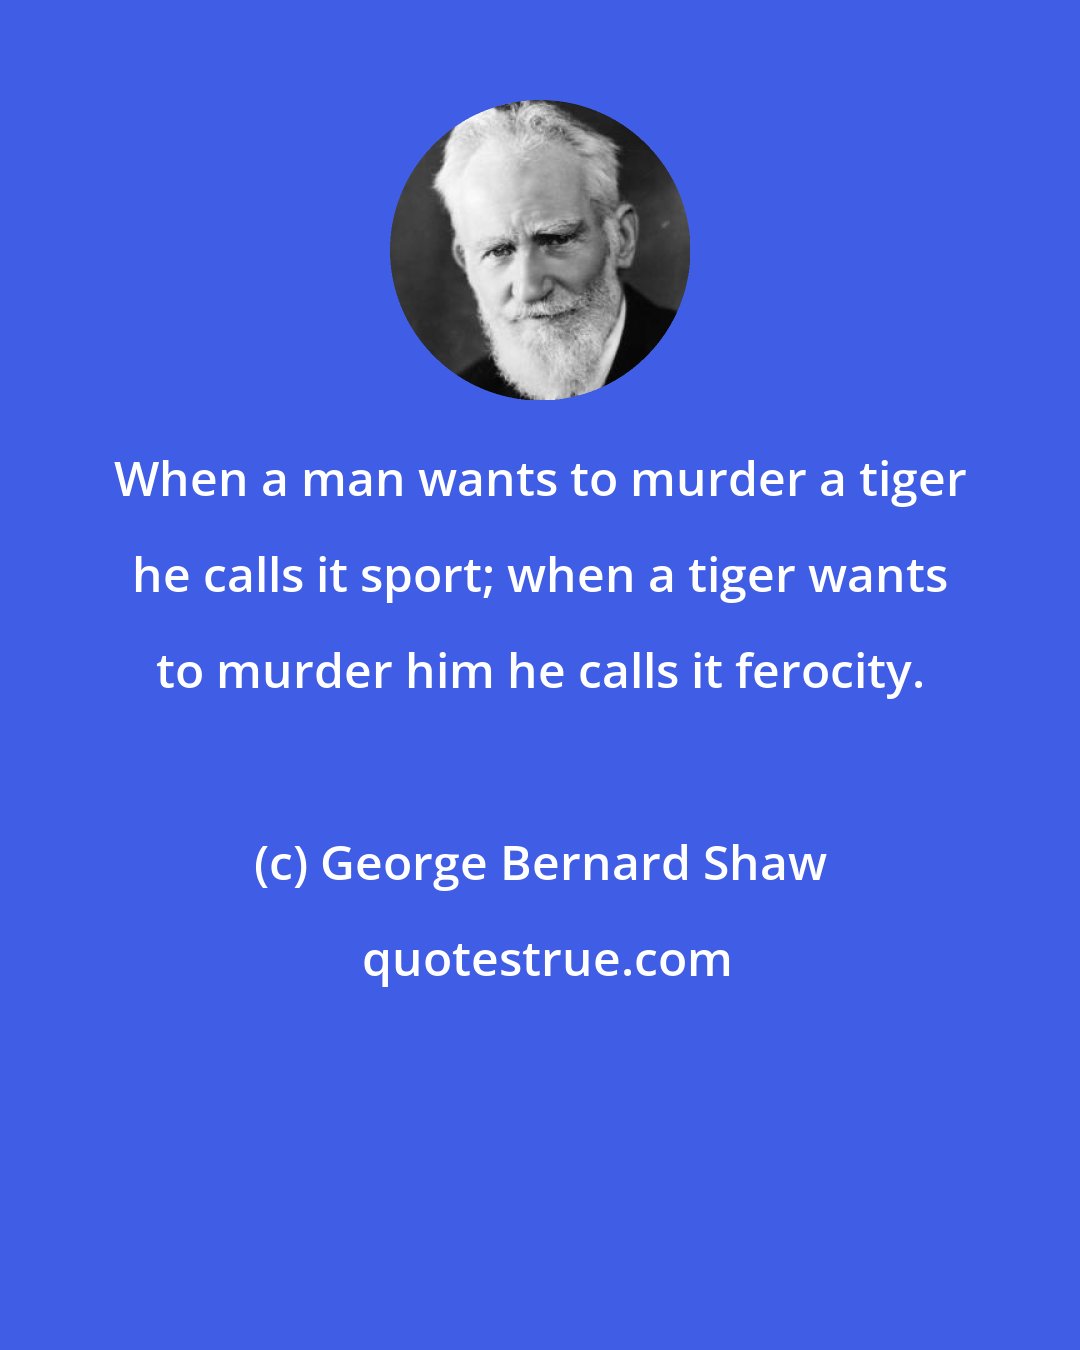 George Bernard Shaw: When a man wants to murder a tiger he calls it sport; when a tiger wants to murder him he calls it ferocity.